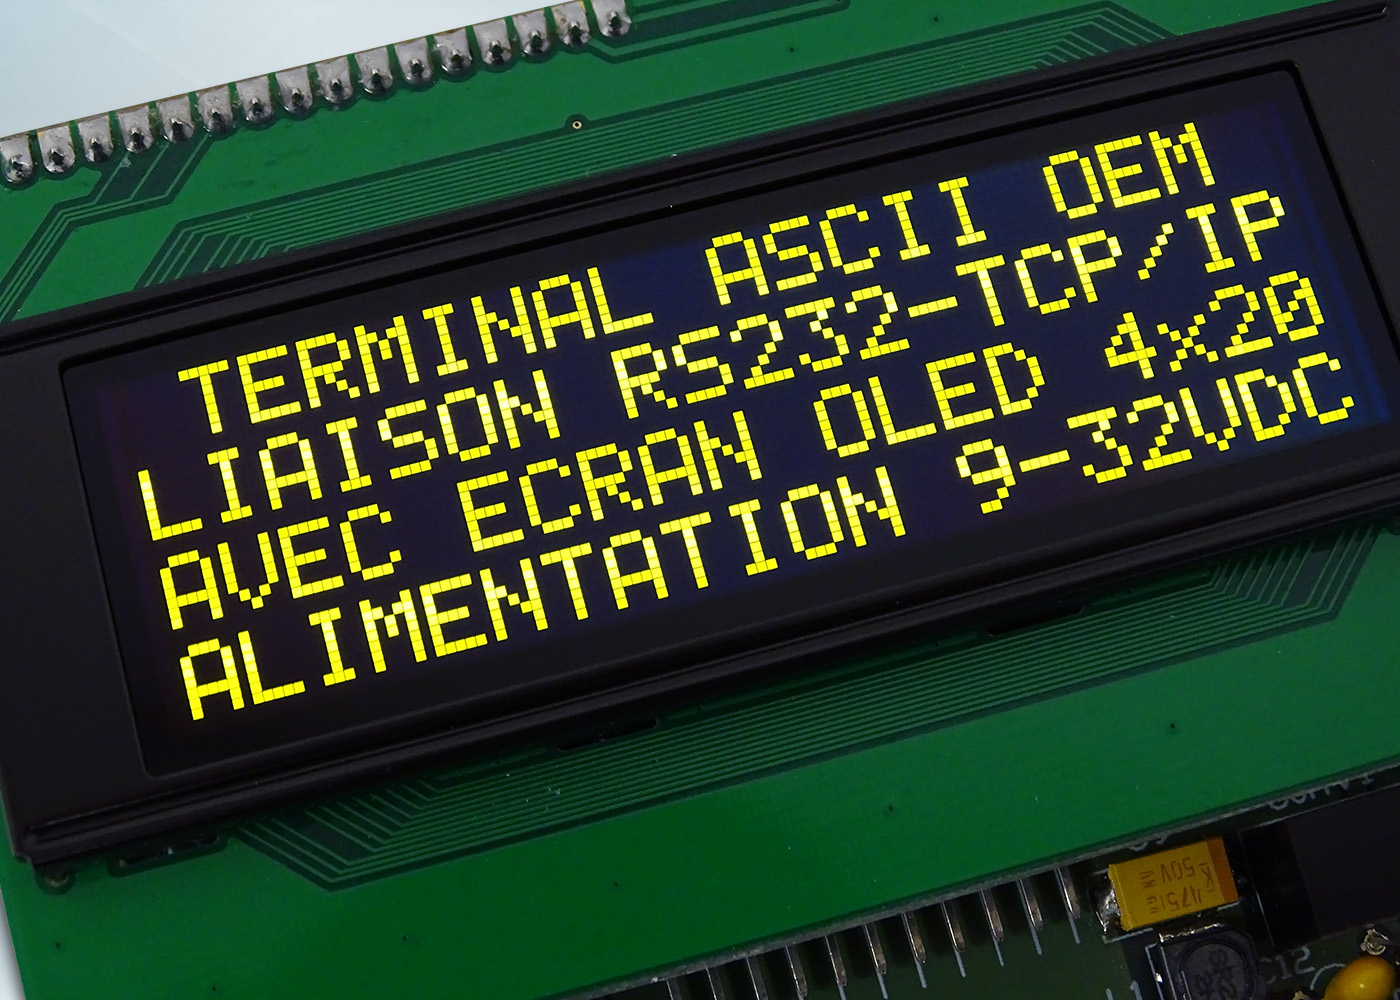 Terminal ASCII OEM RS232 / Ethernet avec afficheur OLED et gestion de 8 touches et 4 LEDs – Bornier d’alimentation 9-32V et prise Ethernet – Afficheur OLED contraste 2000:1